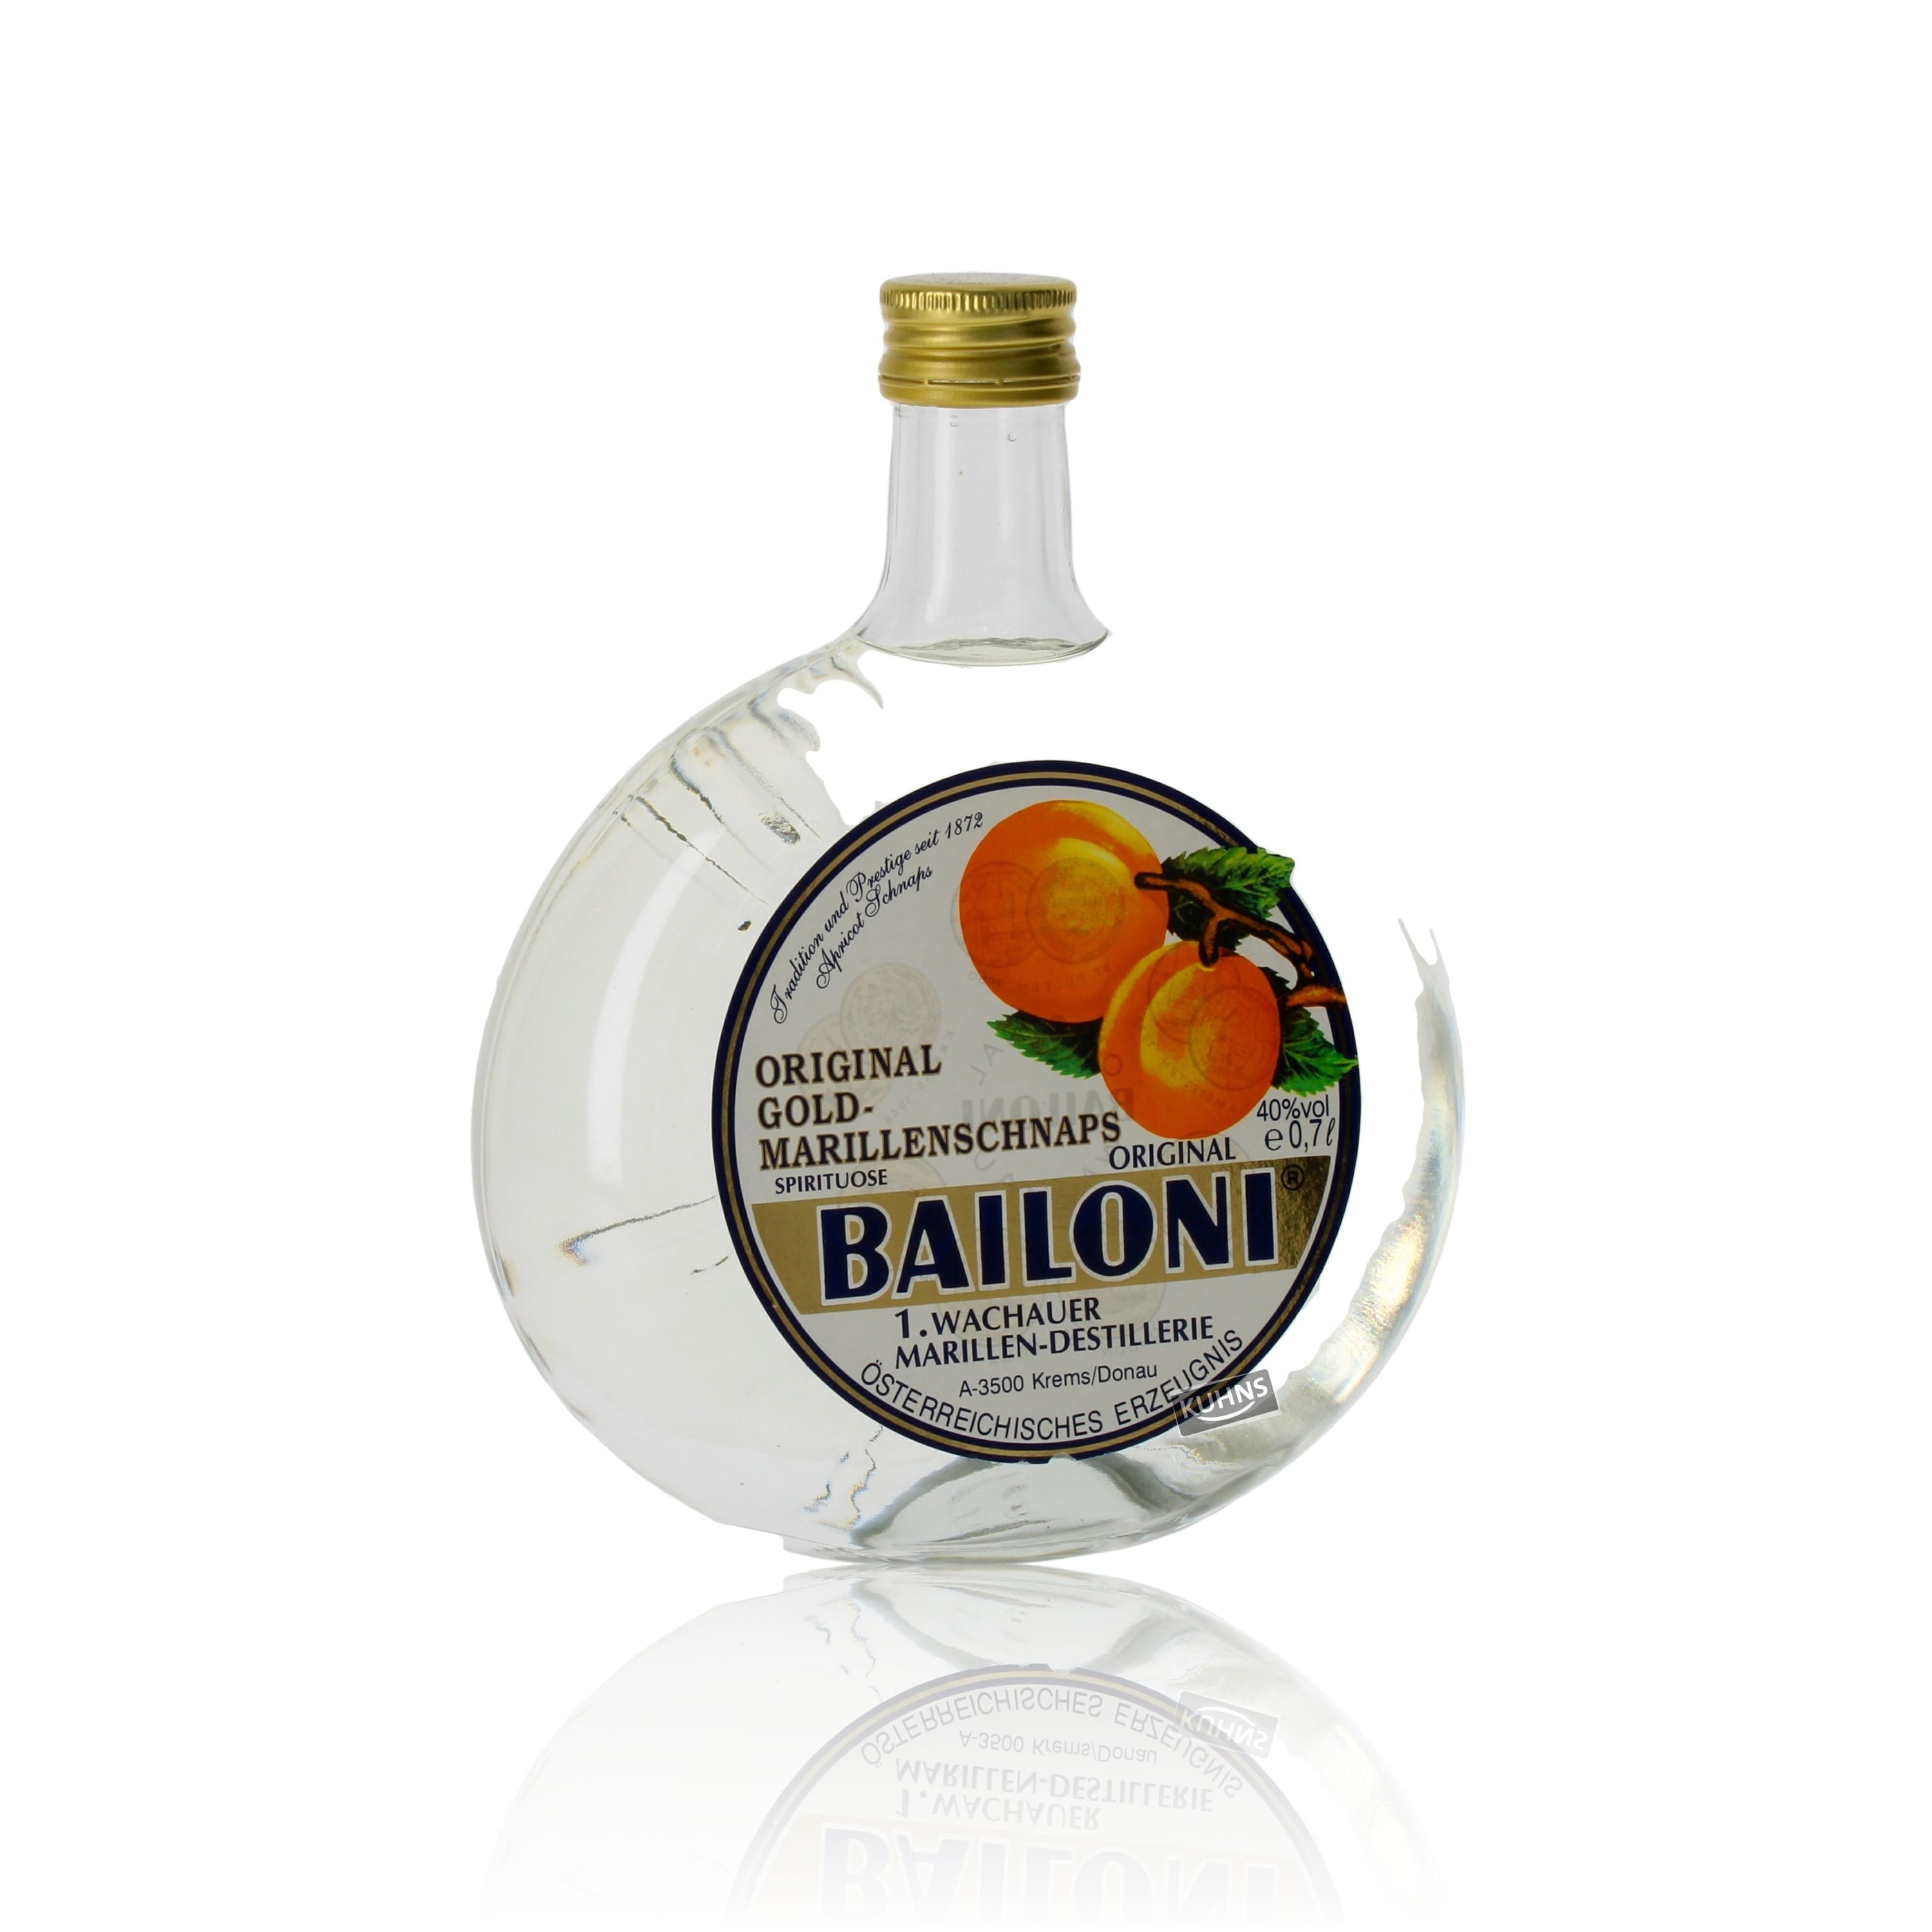 Bailoni Wachau gold apricot schnapps 0.7l, alc. 40% by volume Austria